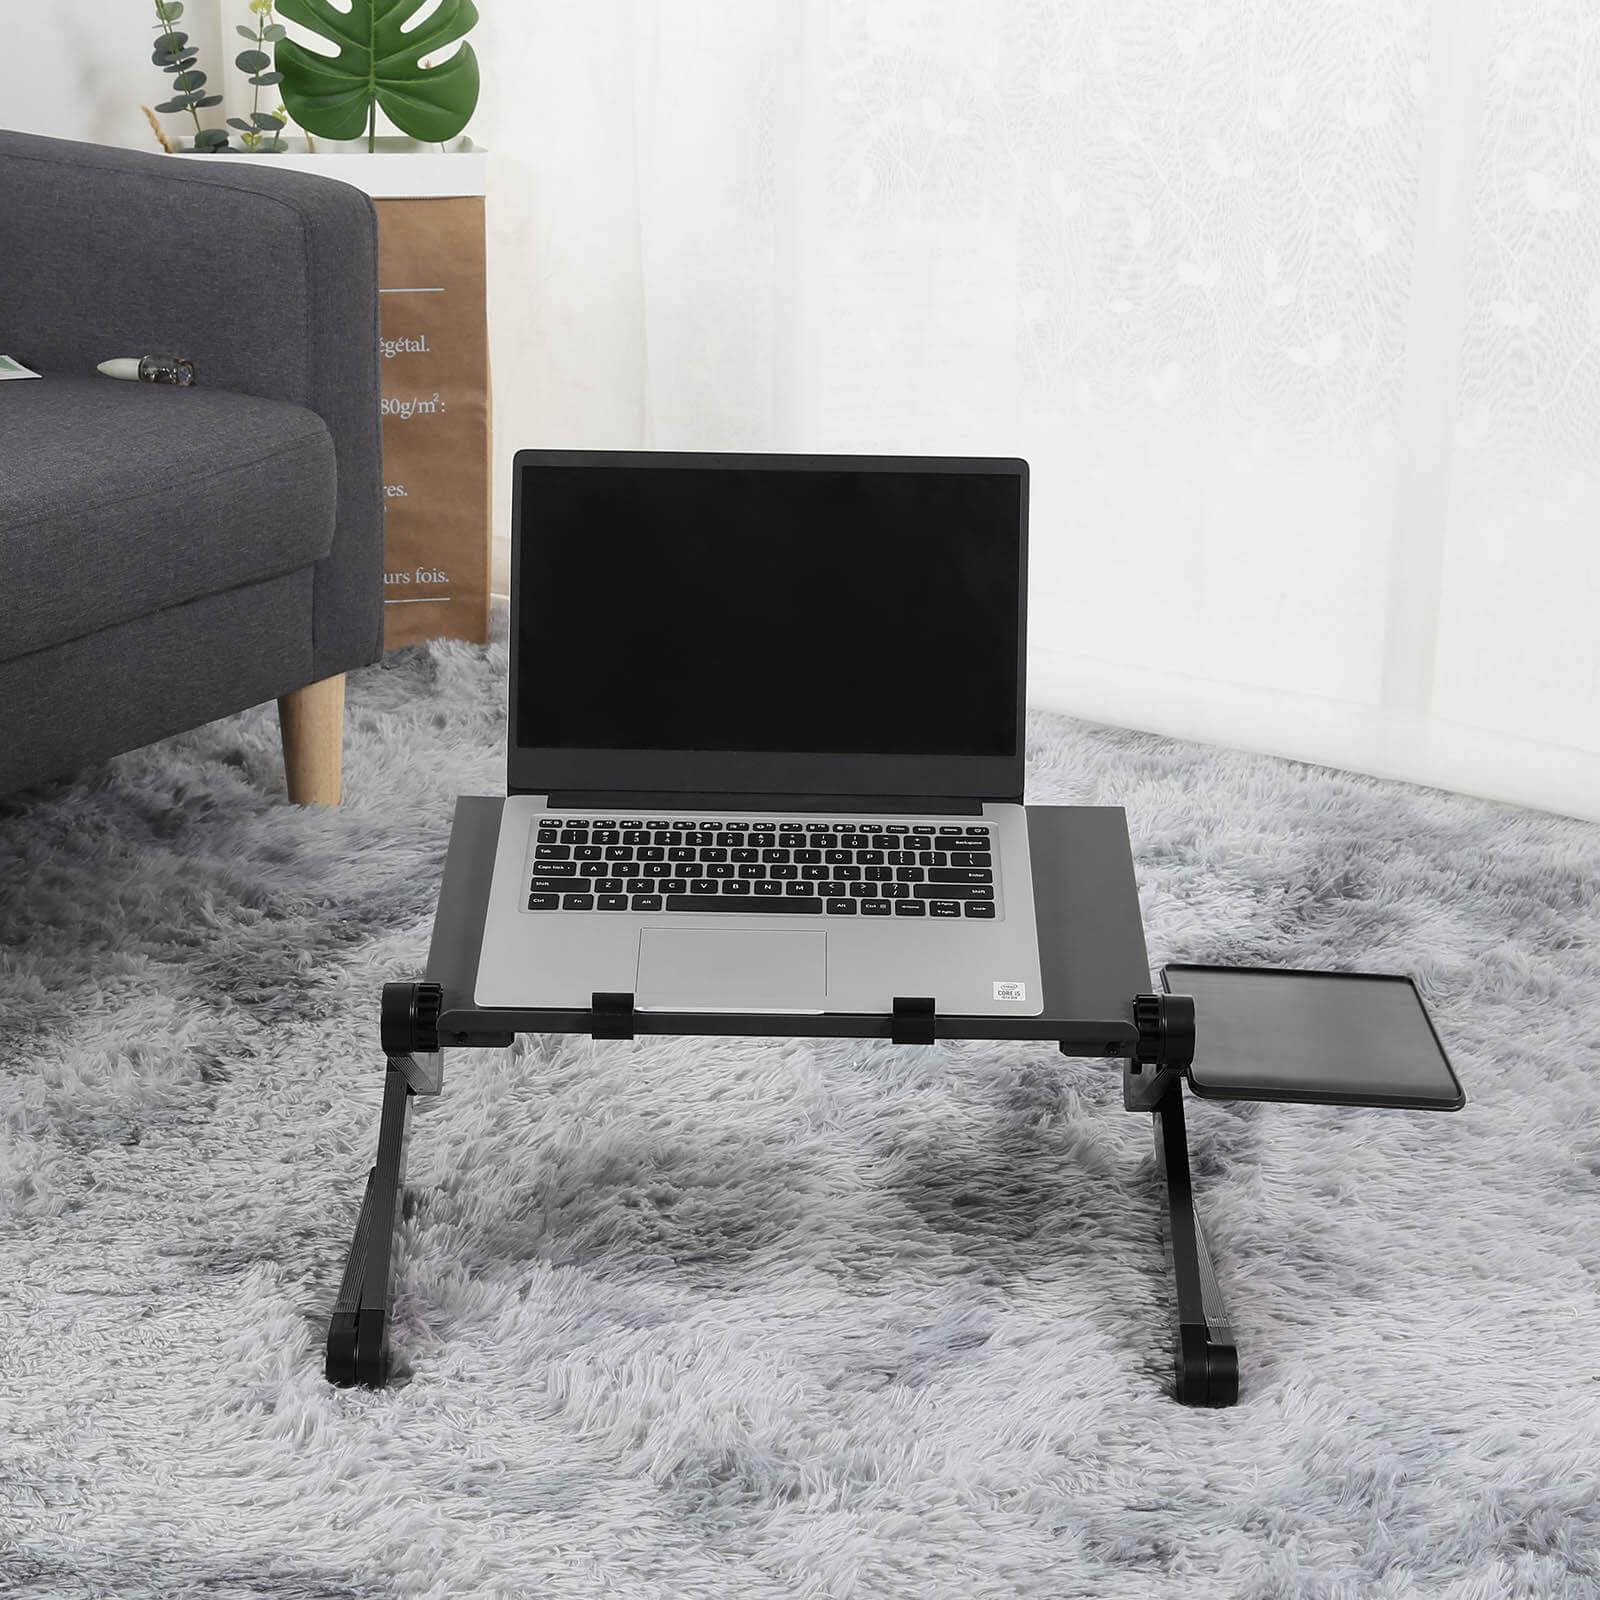 Adjustable Aluminum Ergonomic Laptop Stand